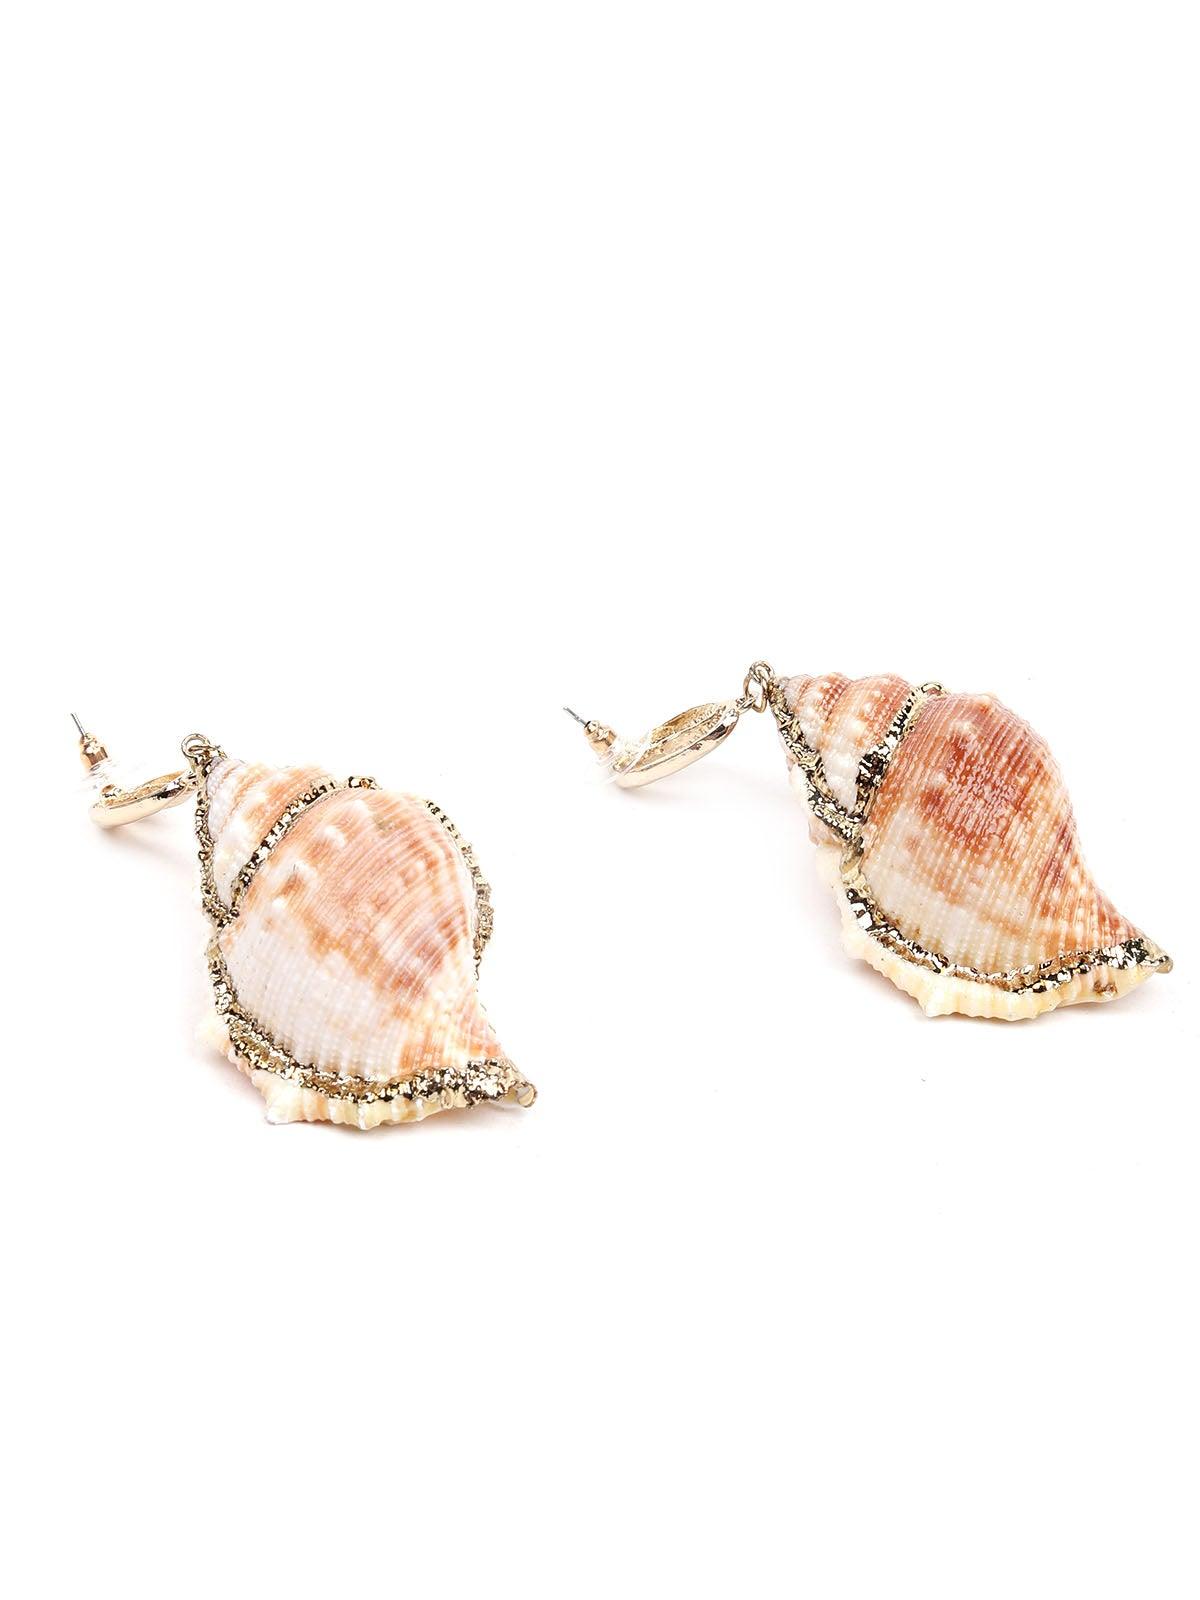 Stunning seashore shell earrings-Gold - Odette